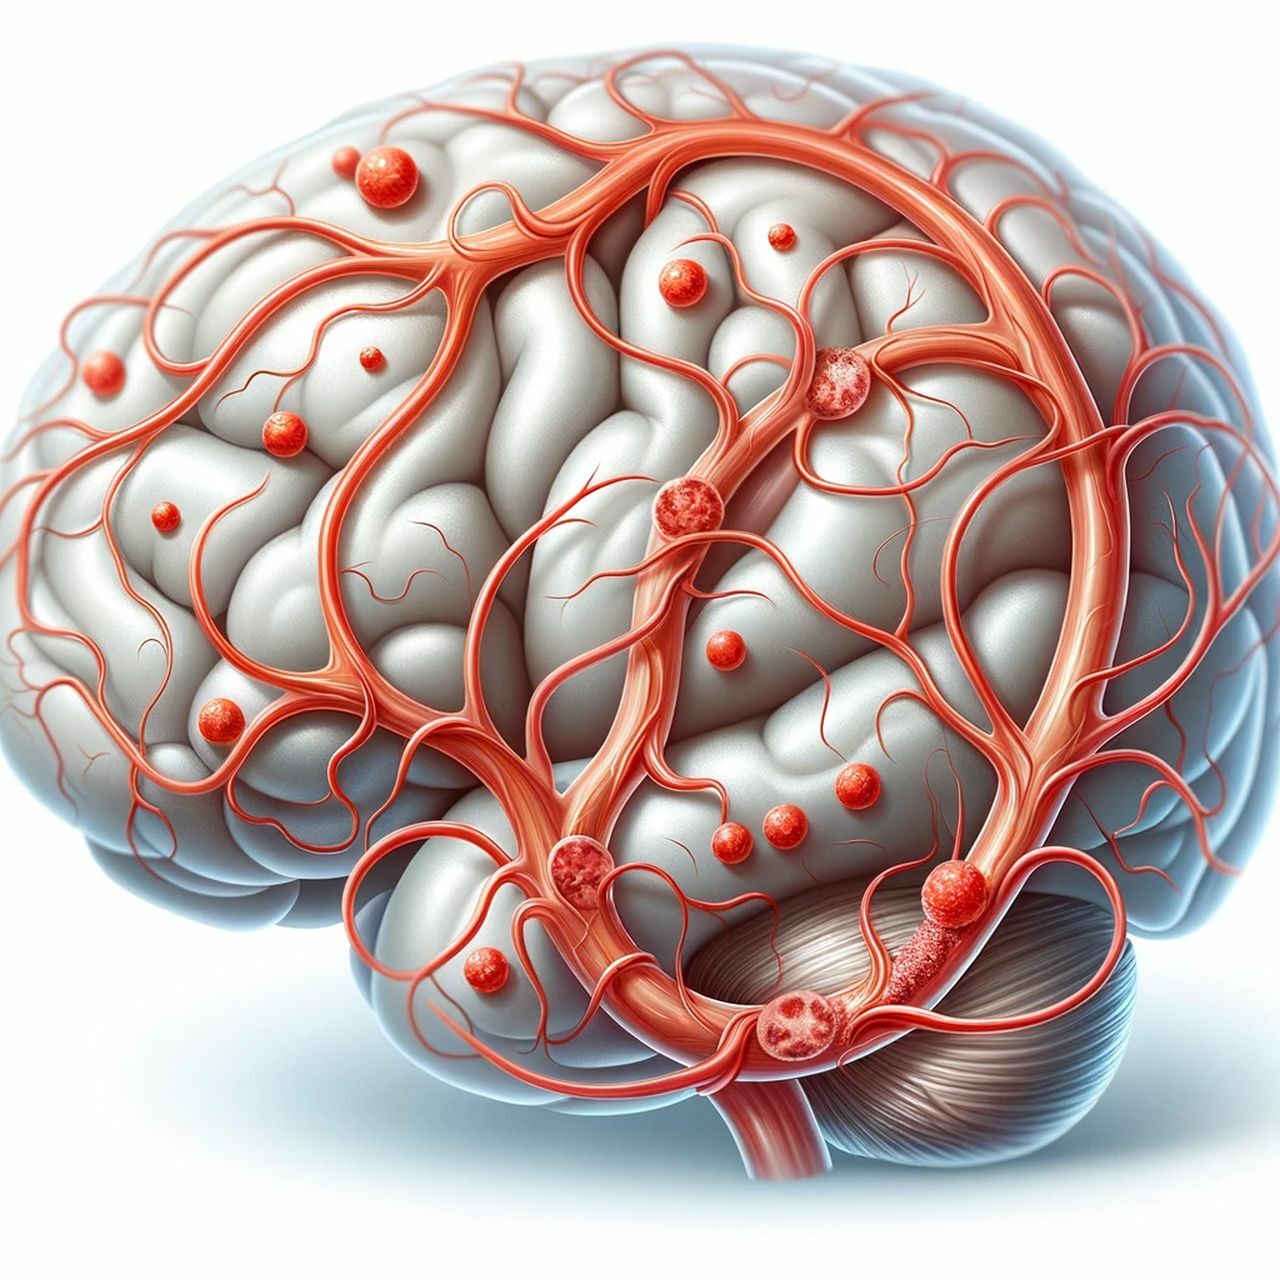 Атеросклероз головного мозга: причины, симптомы, лечение